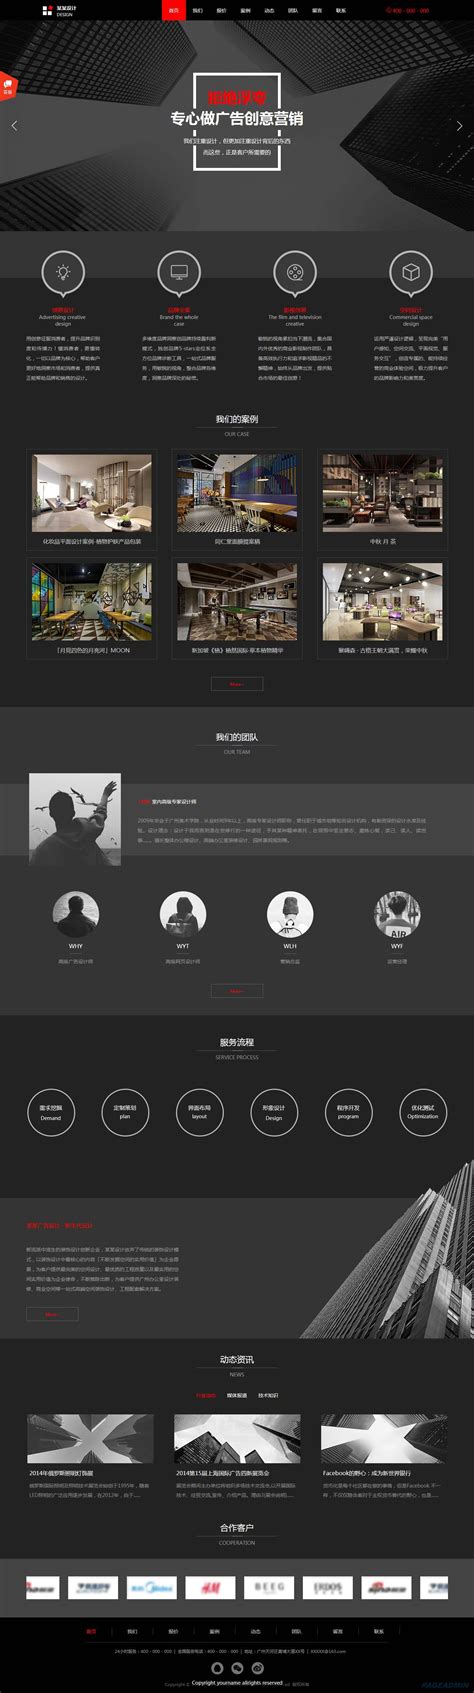 水果拍摄商城网站建设,上海商城网站建设维护,上海商城创意网站设计-海淘科技